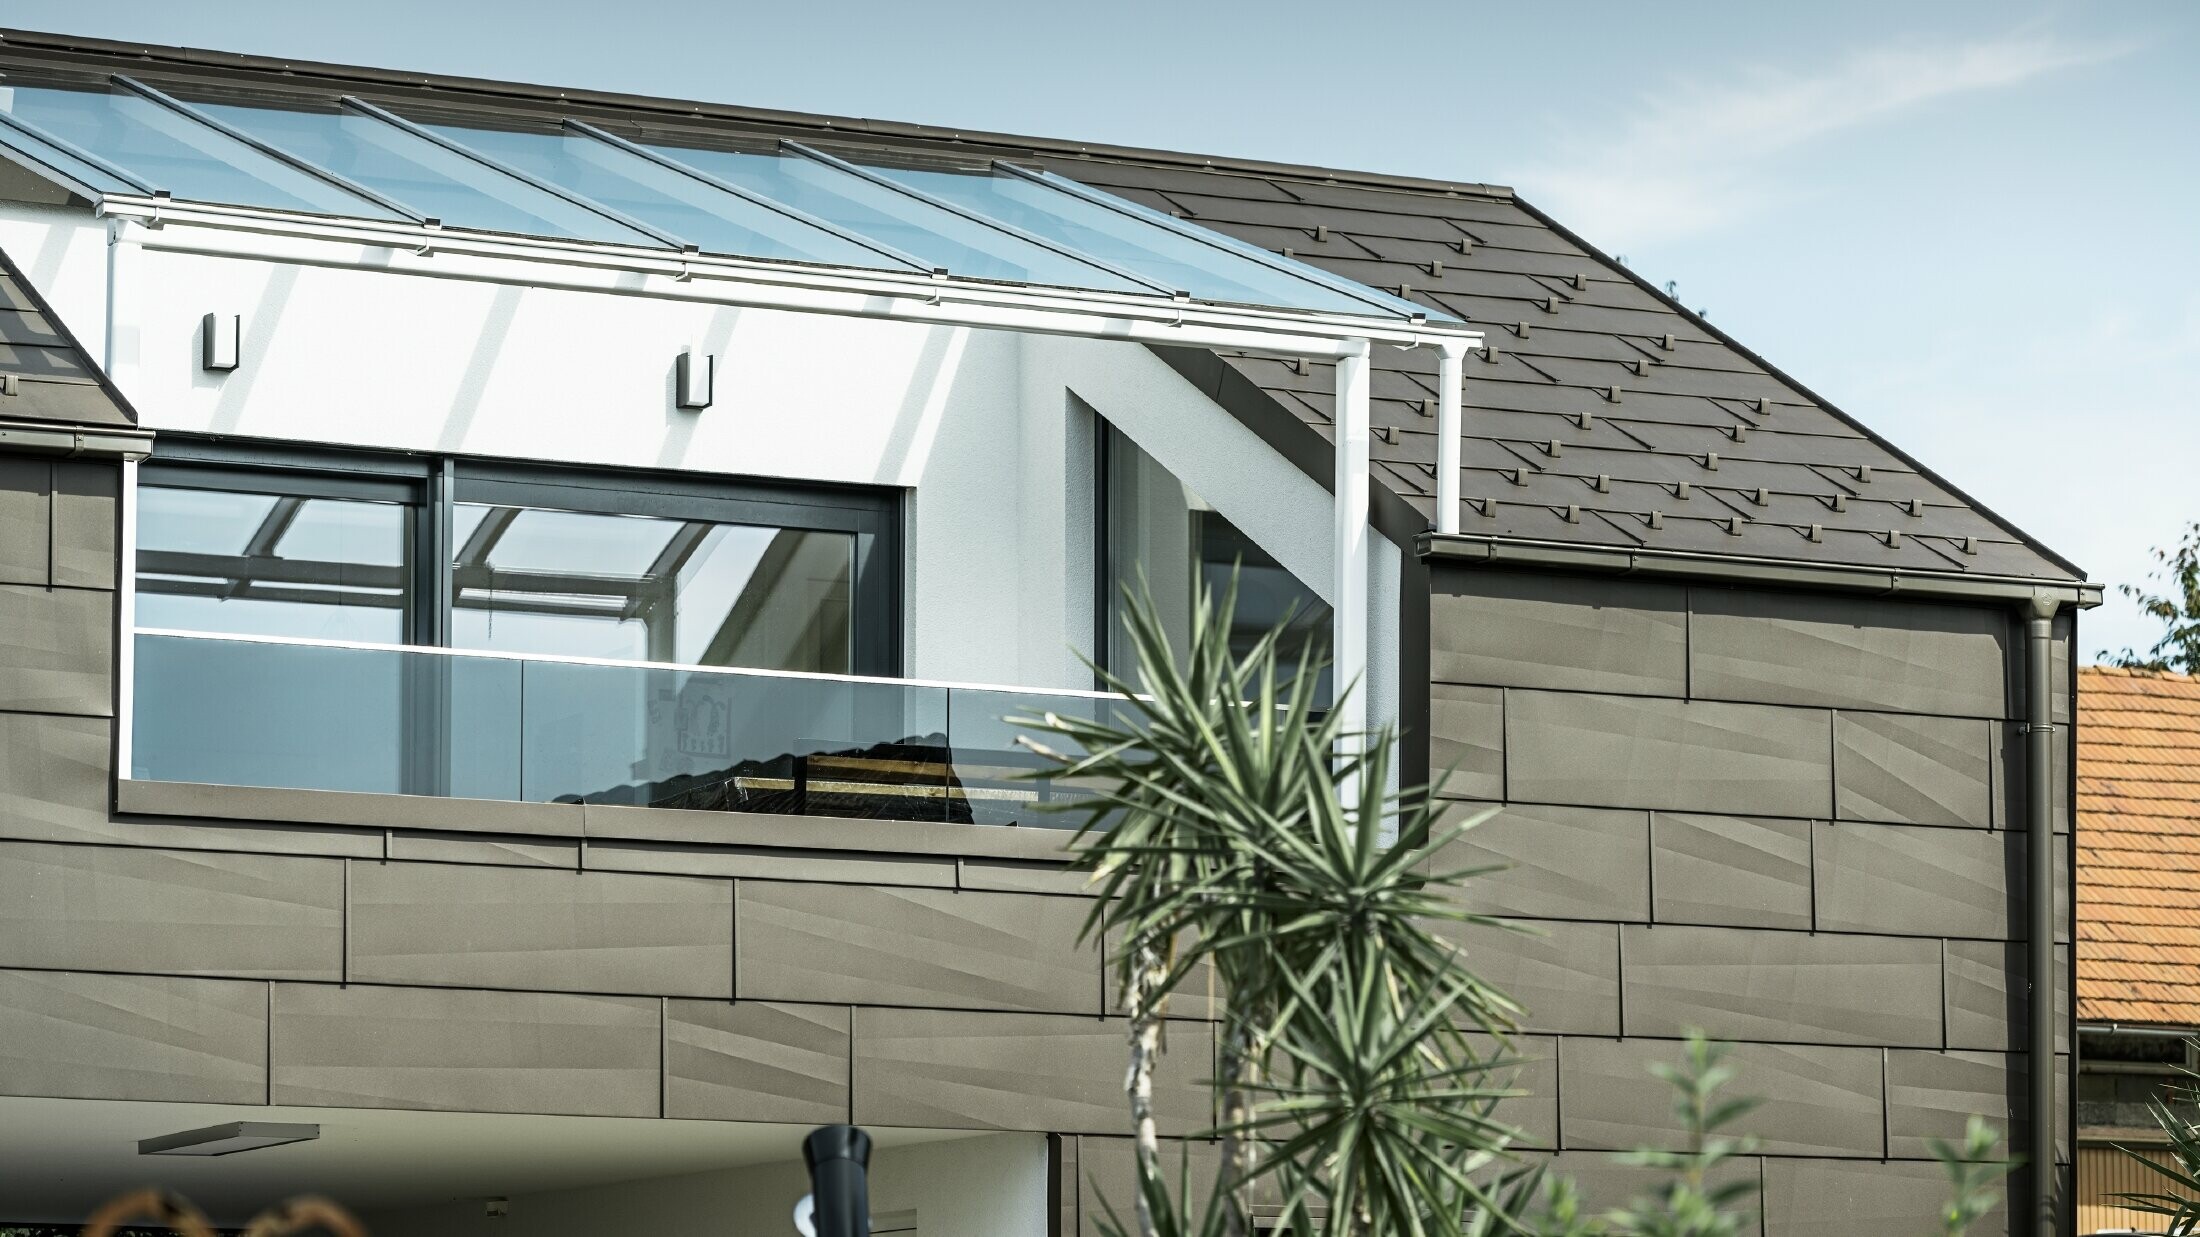 Zubau mit Dachterrasse mit dem PREFA Komplettsystem verkleidet, am Dach und an der Fassade wurden das PREFA Dach- und Fassadenpaneel FX.12 verwendet. Außerdem kommt die PREFA Kastenrinne mit dem PREFA Ablaufrohr und dem umfangreichen Zubehör in Braun als Dachentwässerung zum Einsatz.